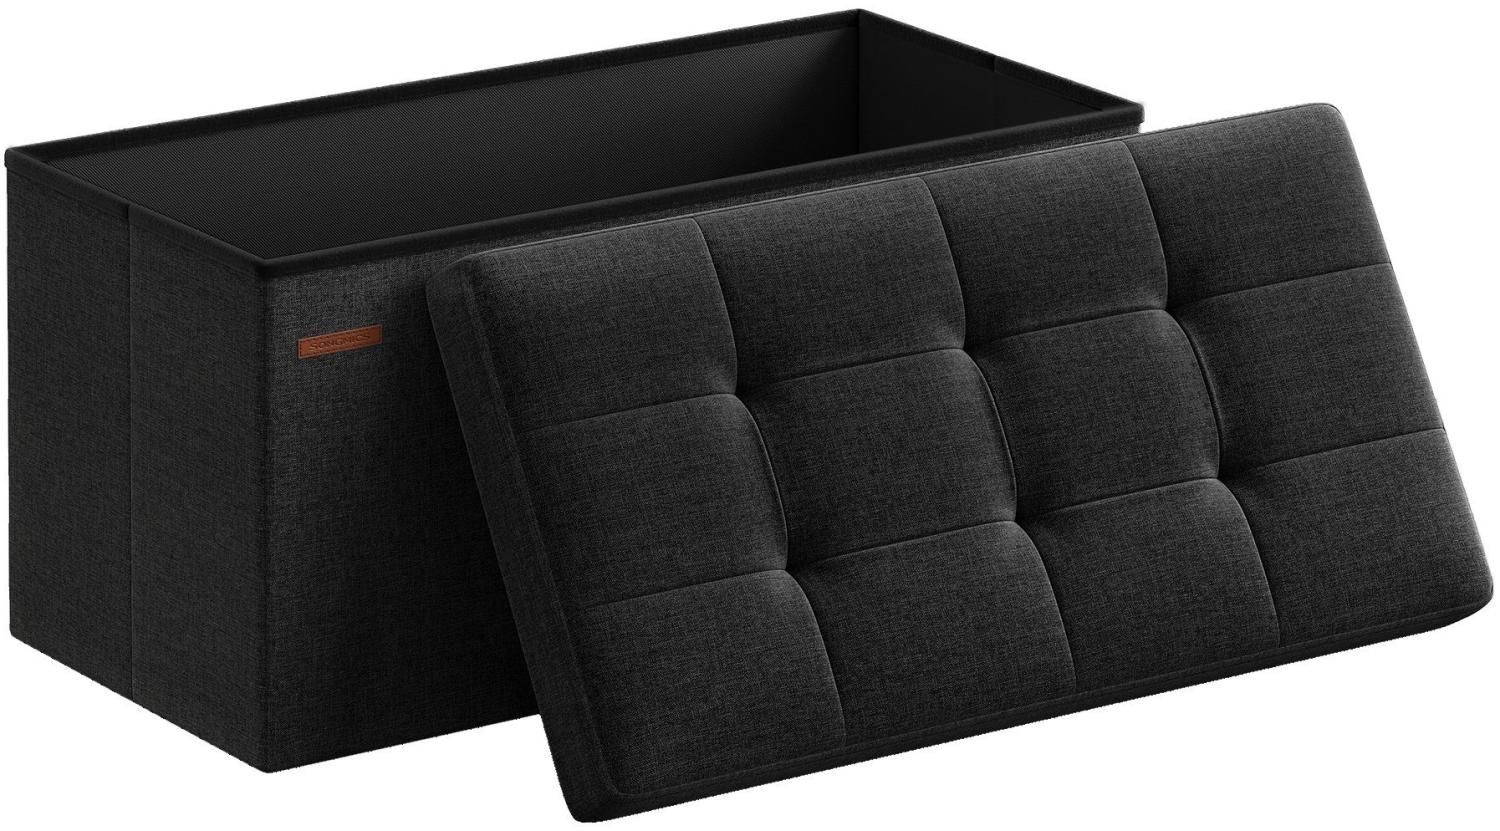 Sitzbank mit Stauraum, 76 cm, klappbare Sitztruhe, Aufbewahrungsbox, Fußbank, schwarz Bild 1